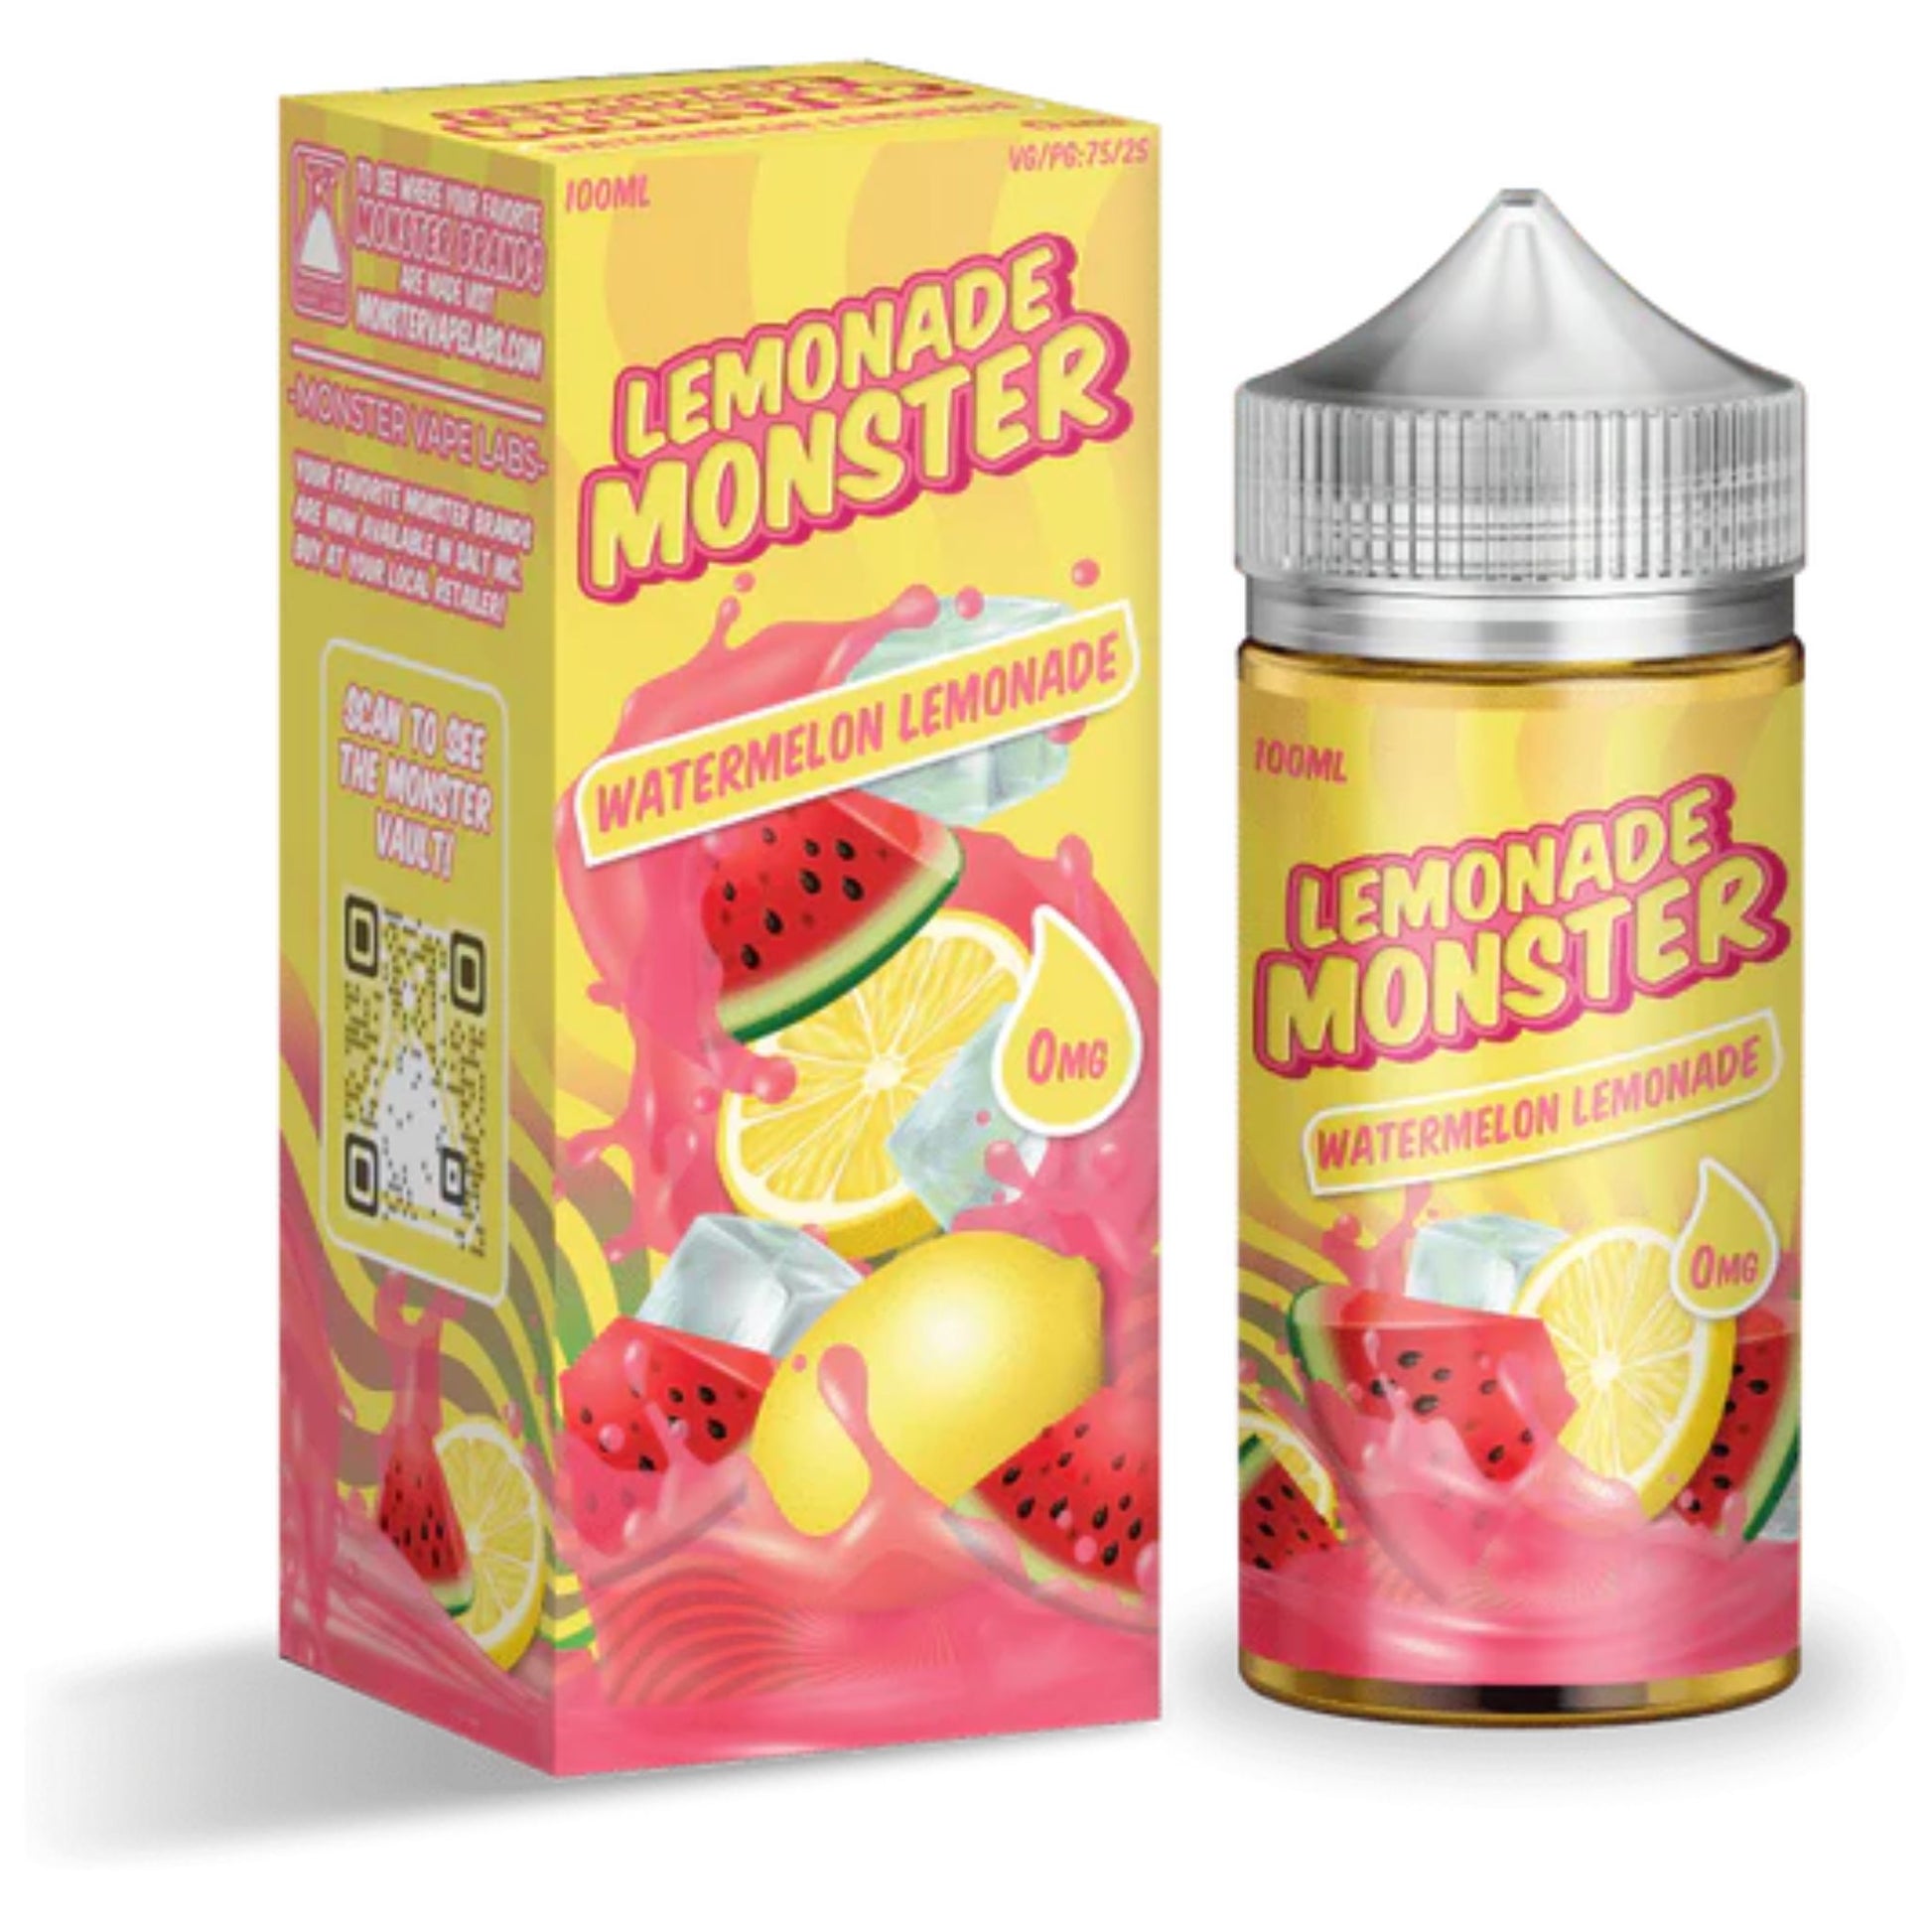 Lemonade Monster | Watermelon Lemonade | 100ml bottle and box